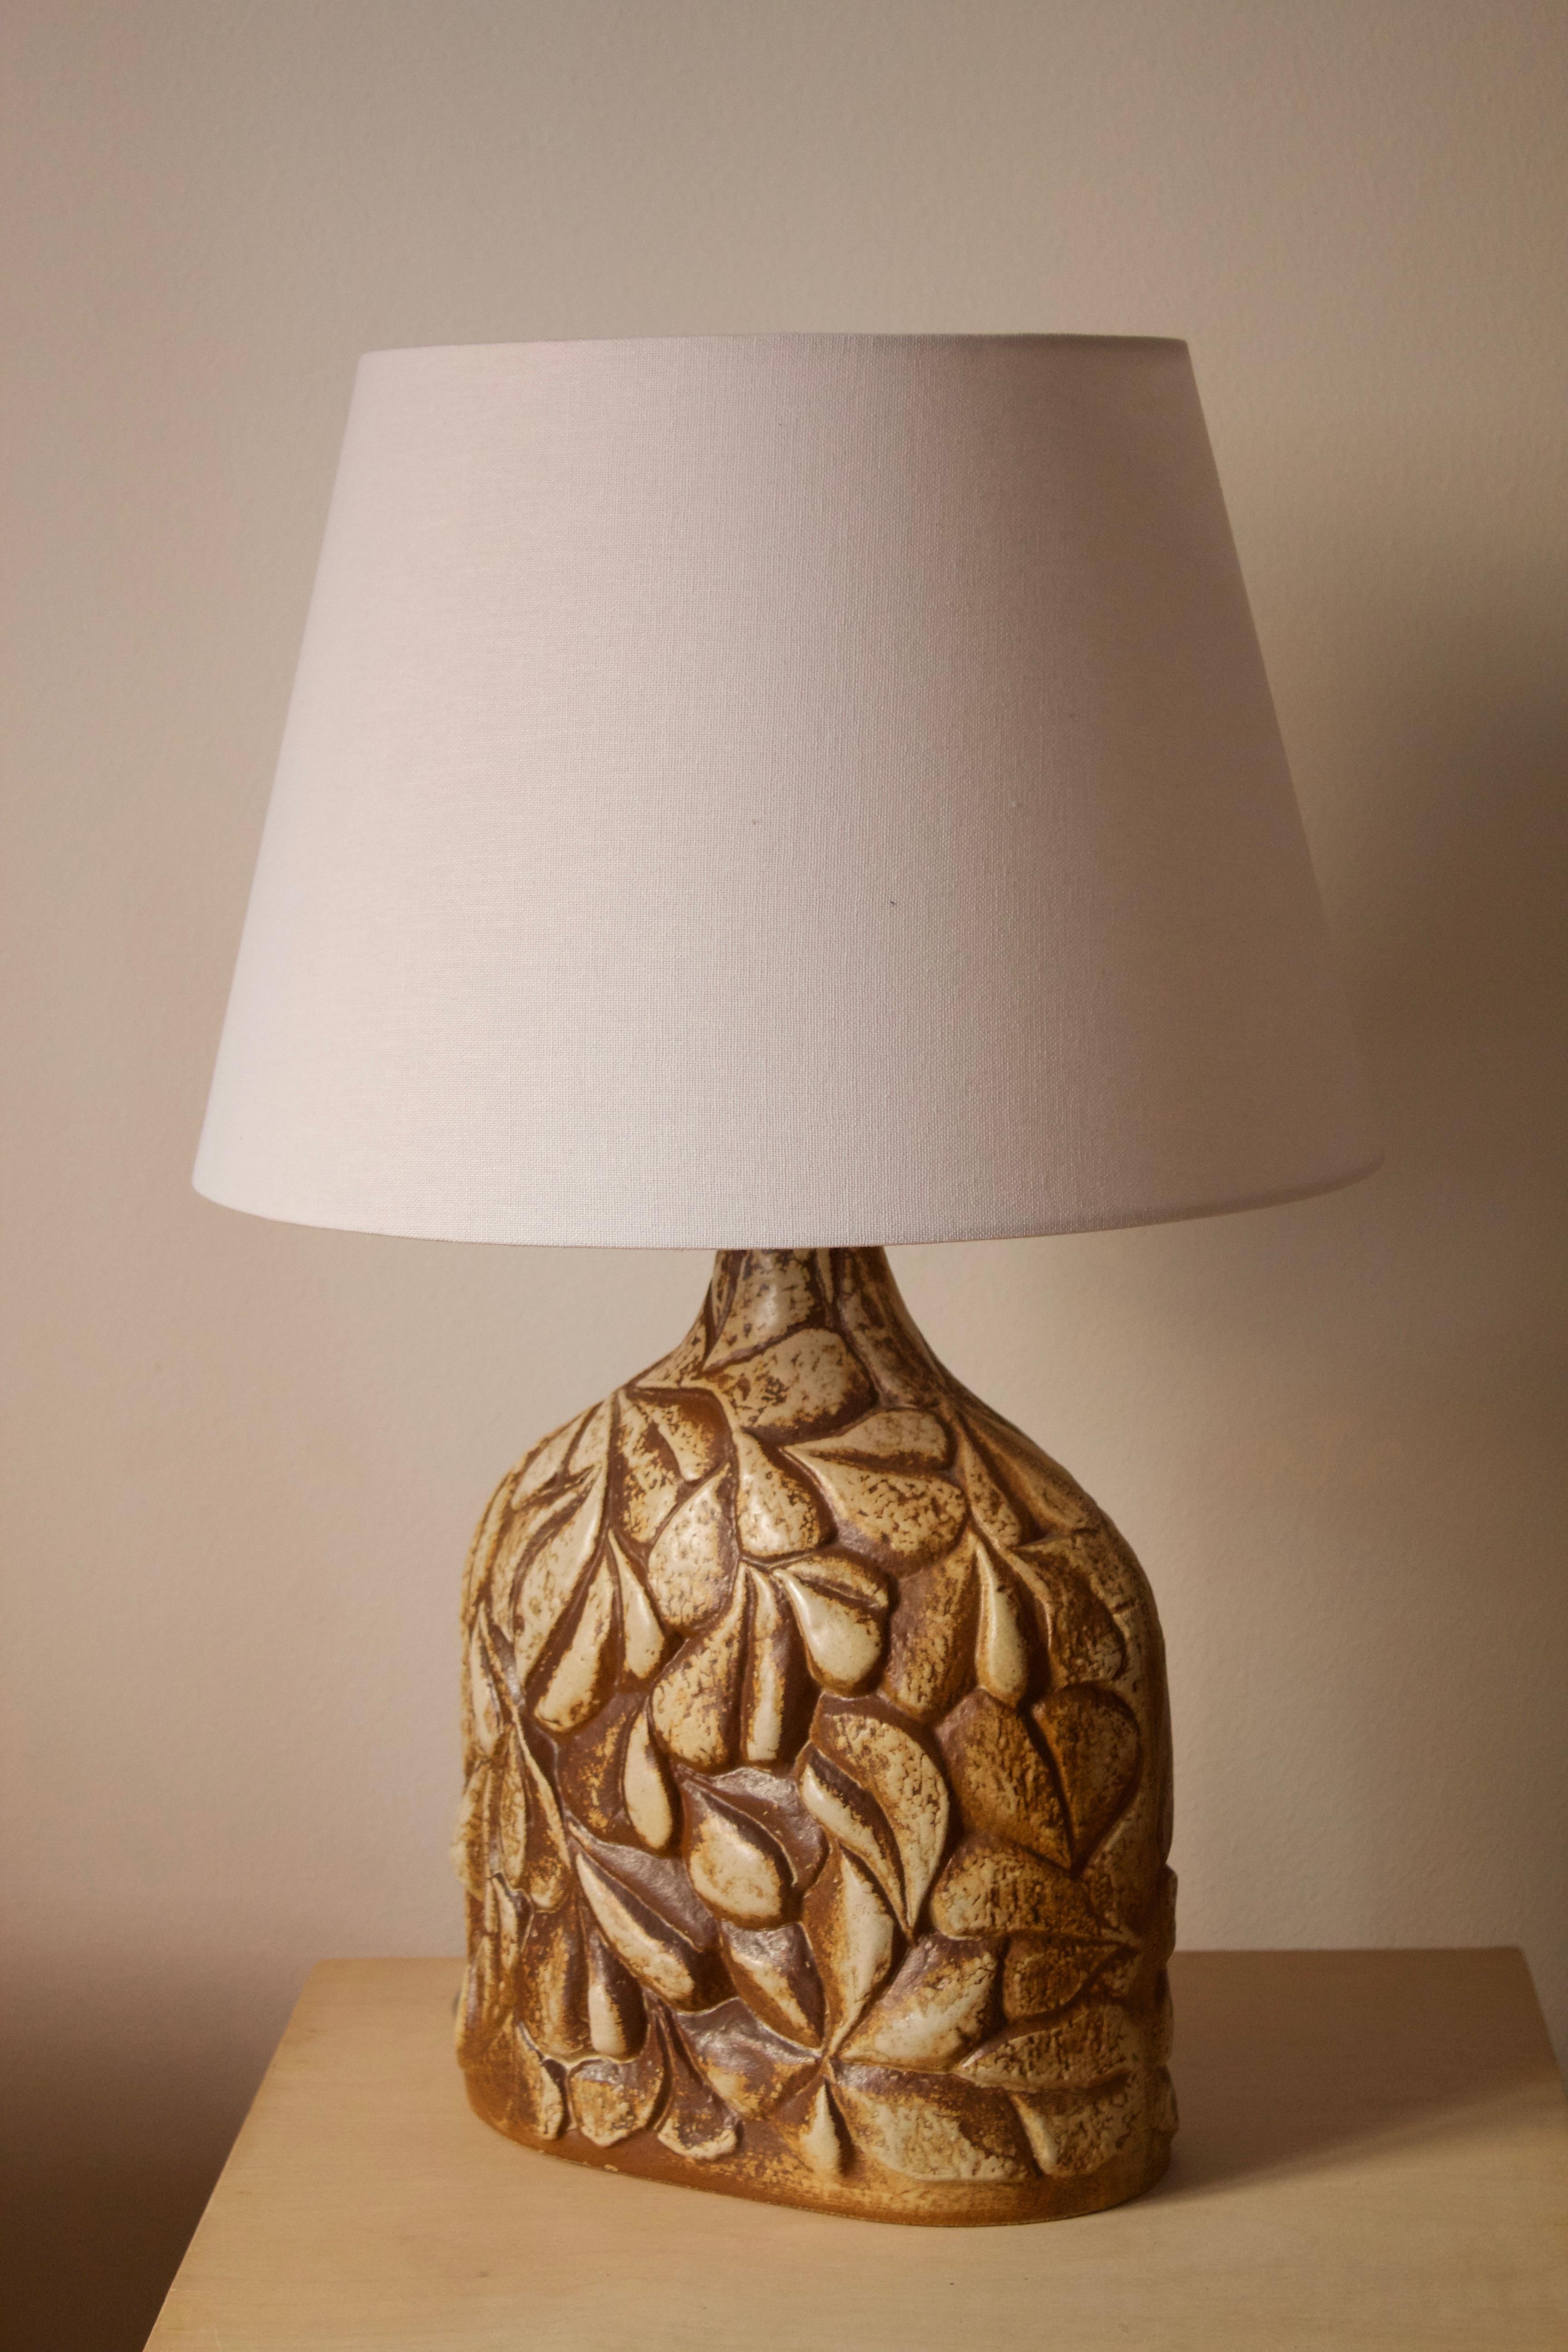 Une grande lampe de table produite par Søholm Keramik, situé sur l'île de Bornholm au Danemark. Elle est dotée d'un décor émaillé très artistique. 

Vendu sans abat-jour. Les dimensions indiquées ne comprennent pas l'abat-jour.

Parmi les autres